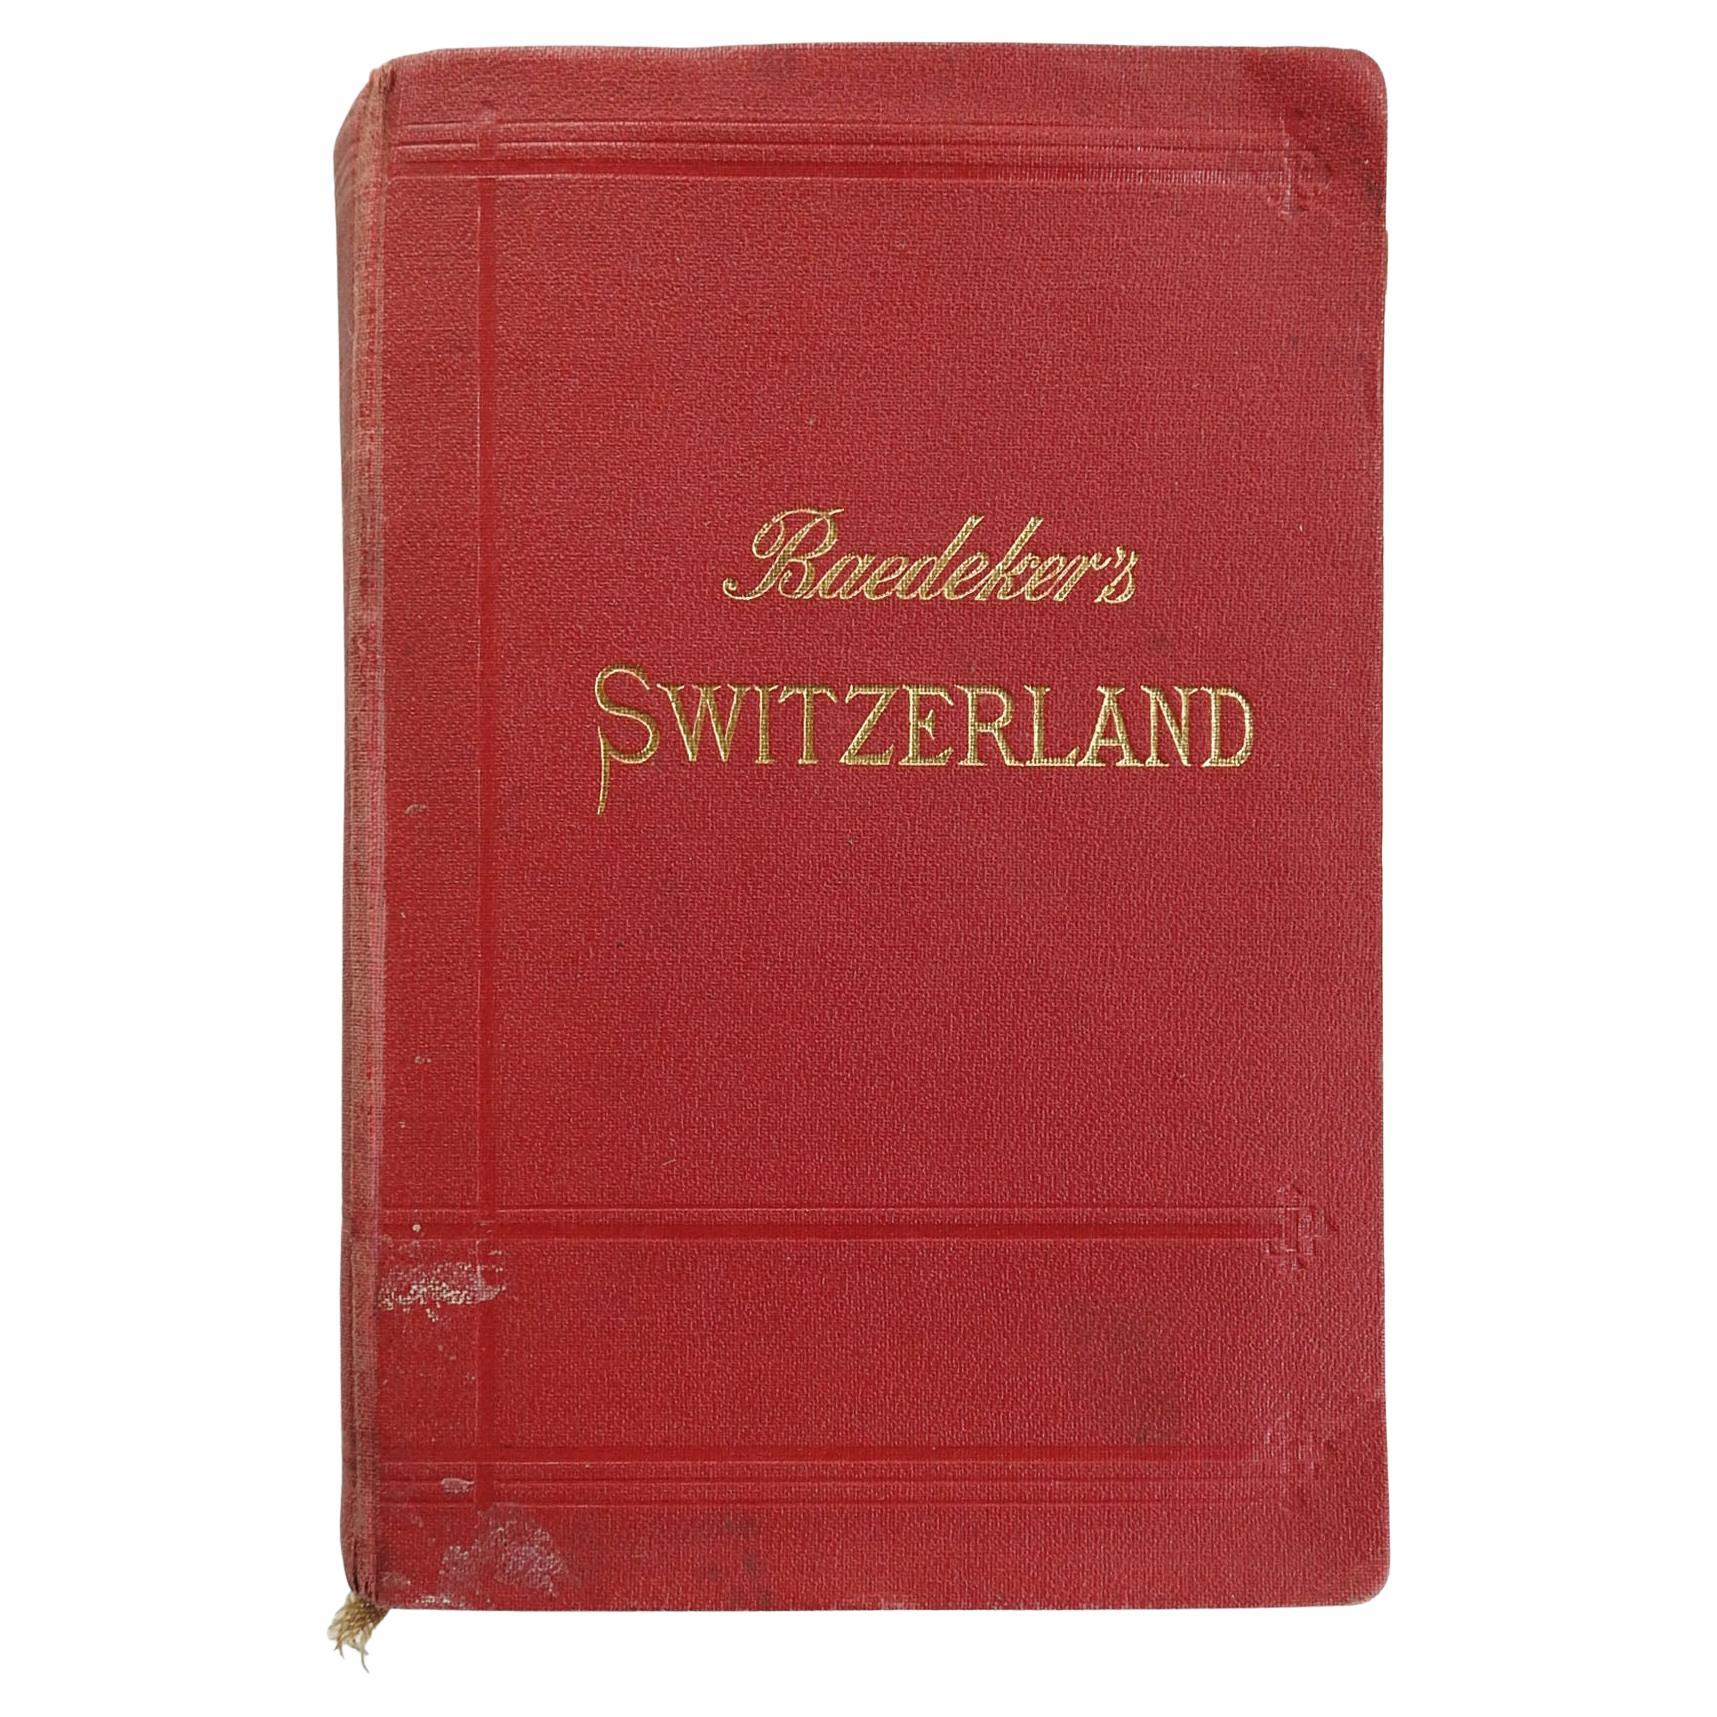 Guide des Baedekers de Suisses de 1911